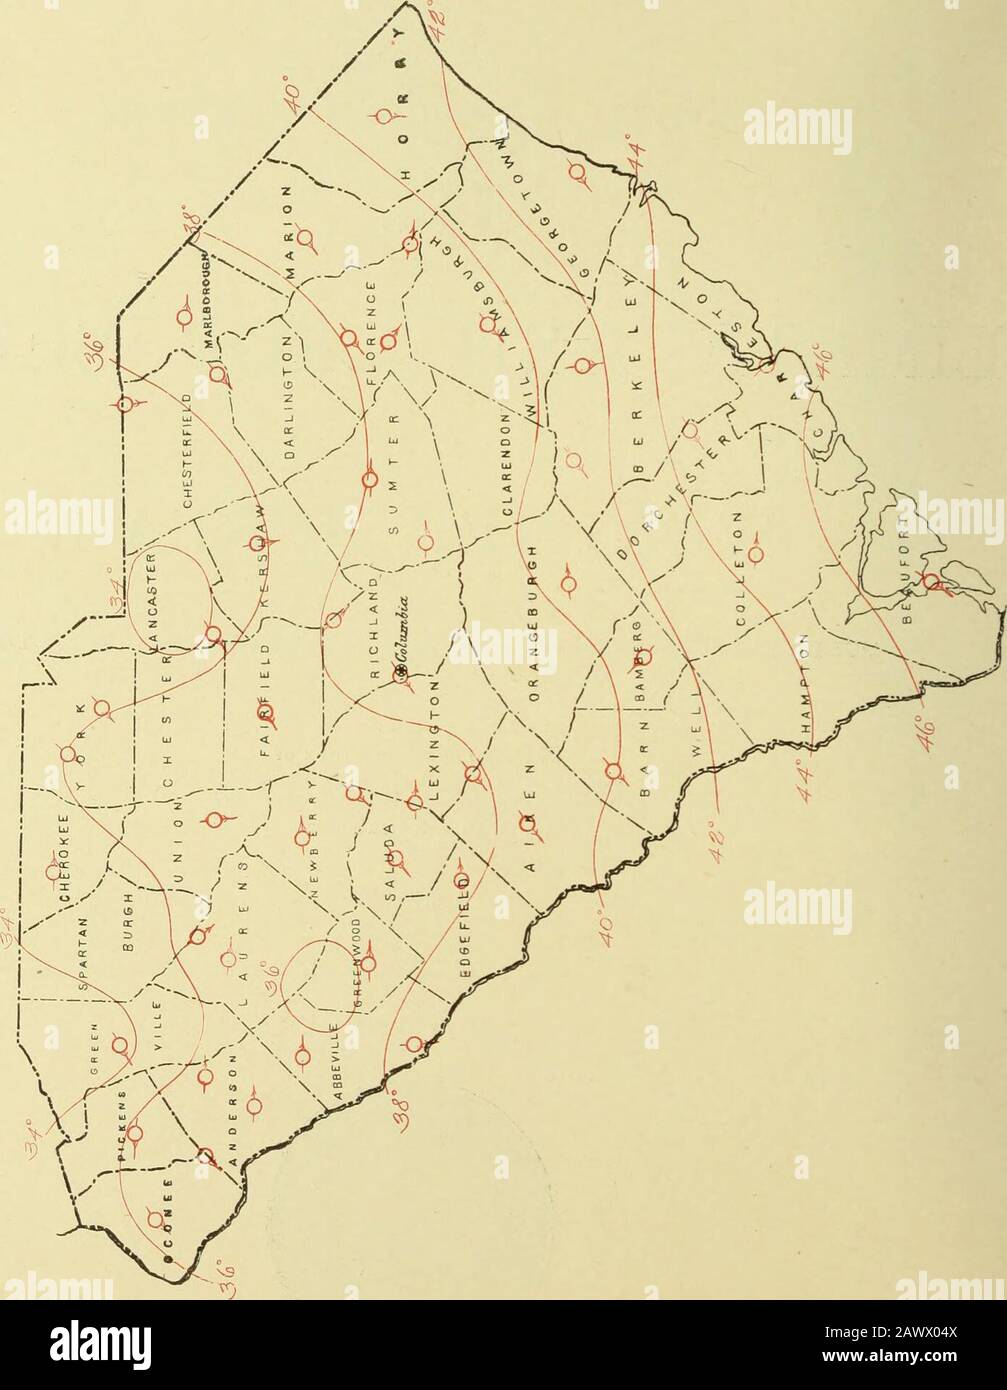 Klimatologische Daten, South Carolina. RALEIGH, NEW C.WEATHER BUREAU. März 1905. O OS IH &gt;^ CA p PHH &lt;i O. i ^^^ Ficiia AKV, l. hir&gt;. CLIMATK UND (Koli^: SOlTII CAIIOI.INA SK(m()N. Klima AM) CKOP Sl-RVICE WliAFIiR BCRLMl. ZENTRALSTELLE: WASHINGTON, D. C. SOUTH CAF^OLLNFL SECTION. J. W. BAUER, Section Director, COLUMKIA, S. C. vot. VIII Columbia, S. C, Februar 1905. Nr. 2. FORTSCHRITT DER LANDWIRTSCHAFTLICHEN ARBEIT. ? Der Monat war ungewöhnlich und pei-stently kalt bis zum 20., nach whicli mild, und angenehm, und di-y Wetter setzte sich bis zum Ende durch. Der mittlere Temperaturvergleich Stockfoto